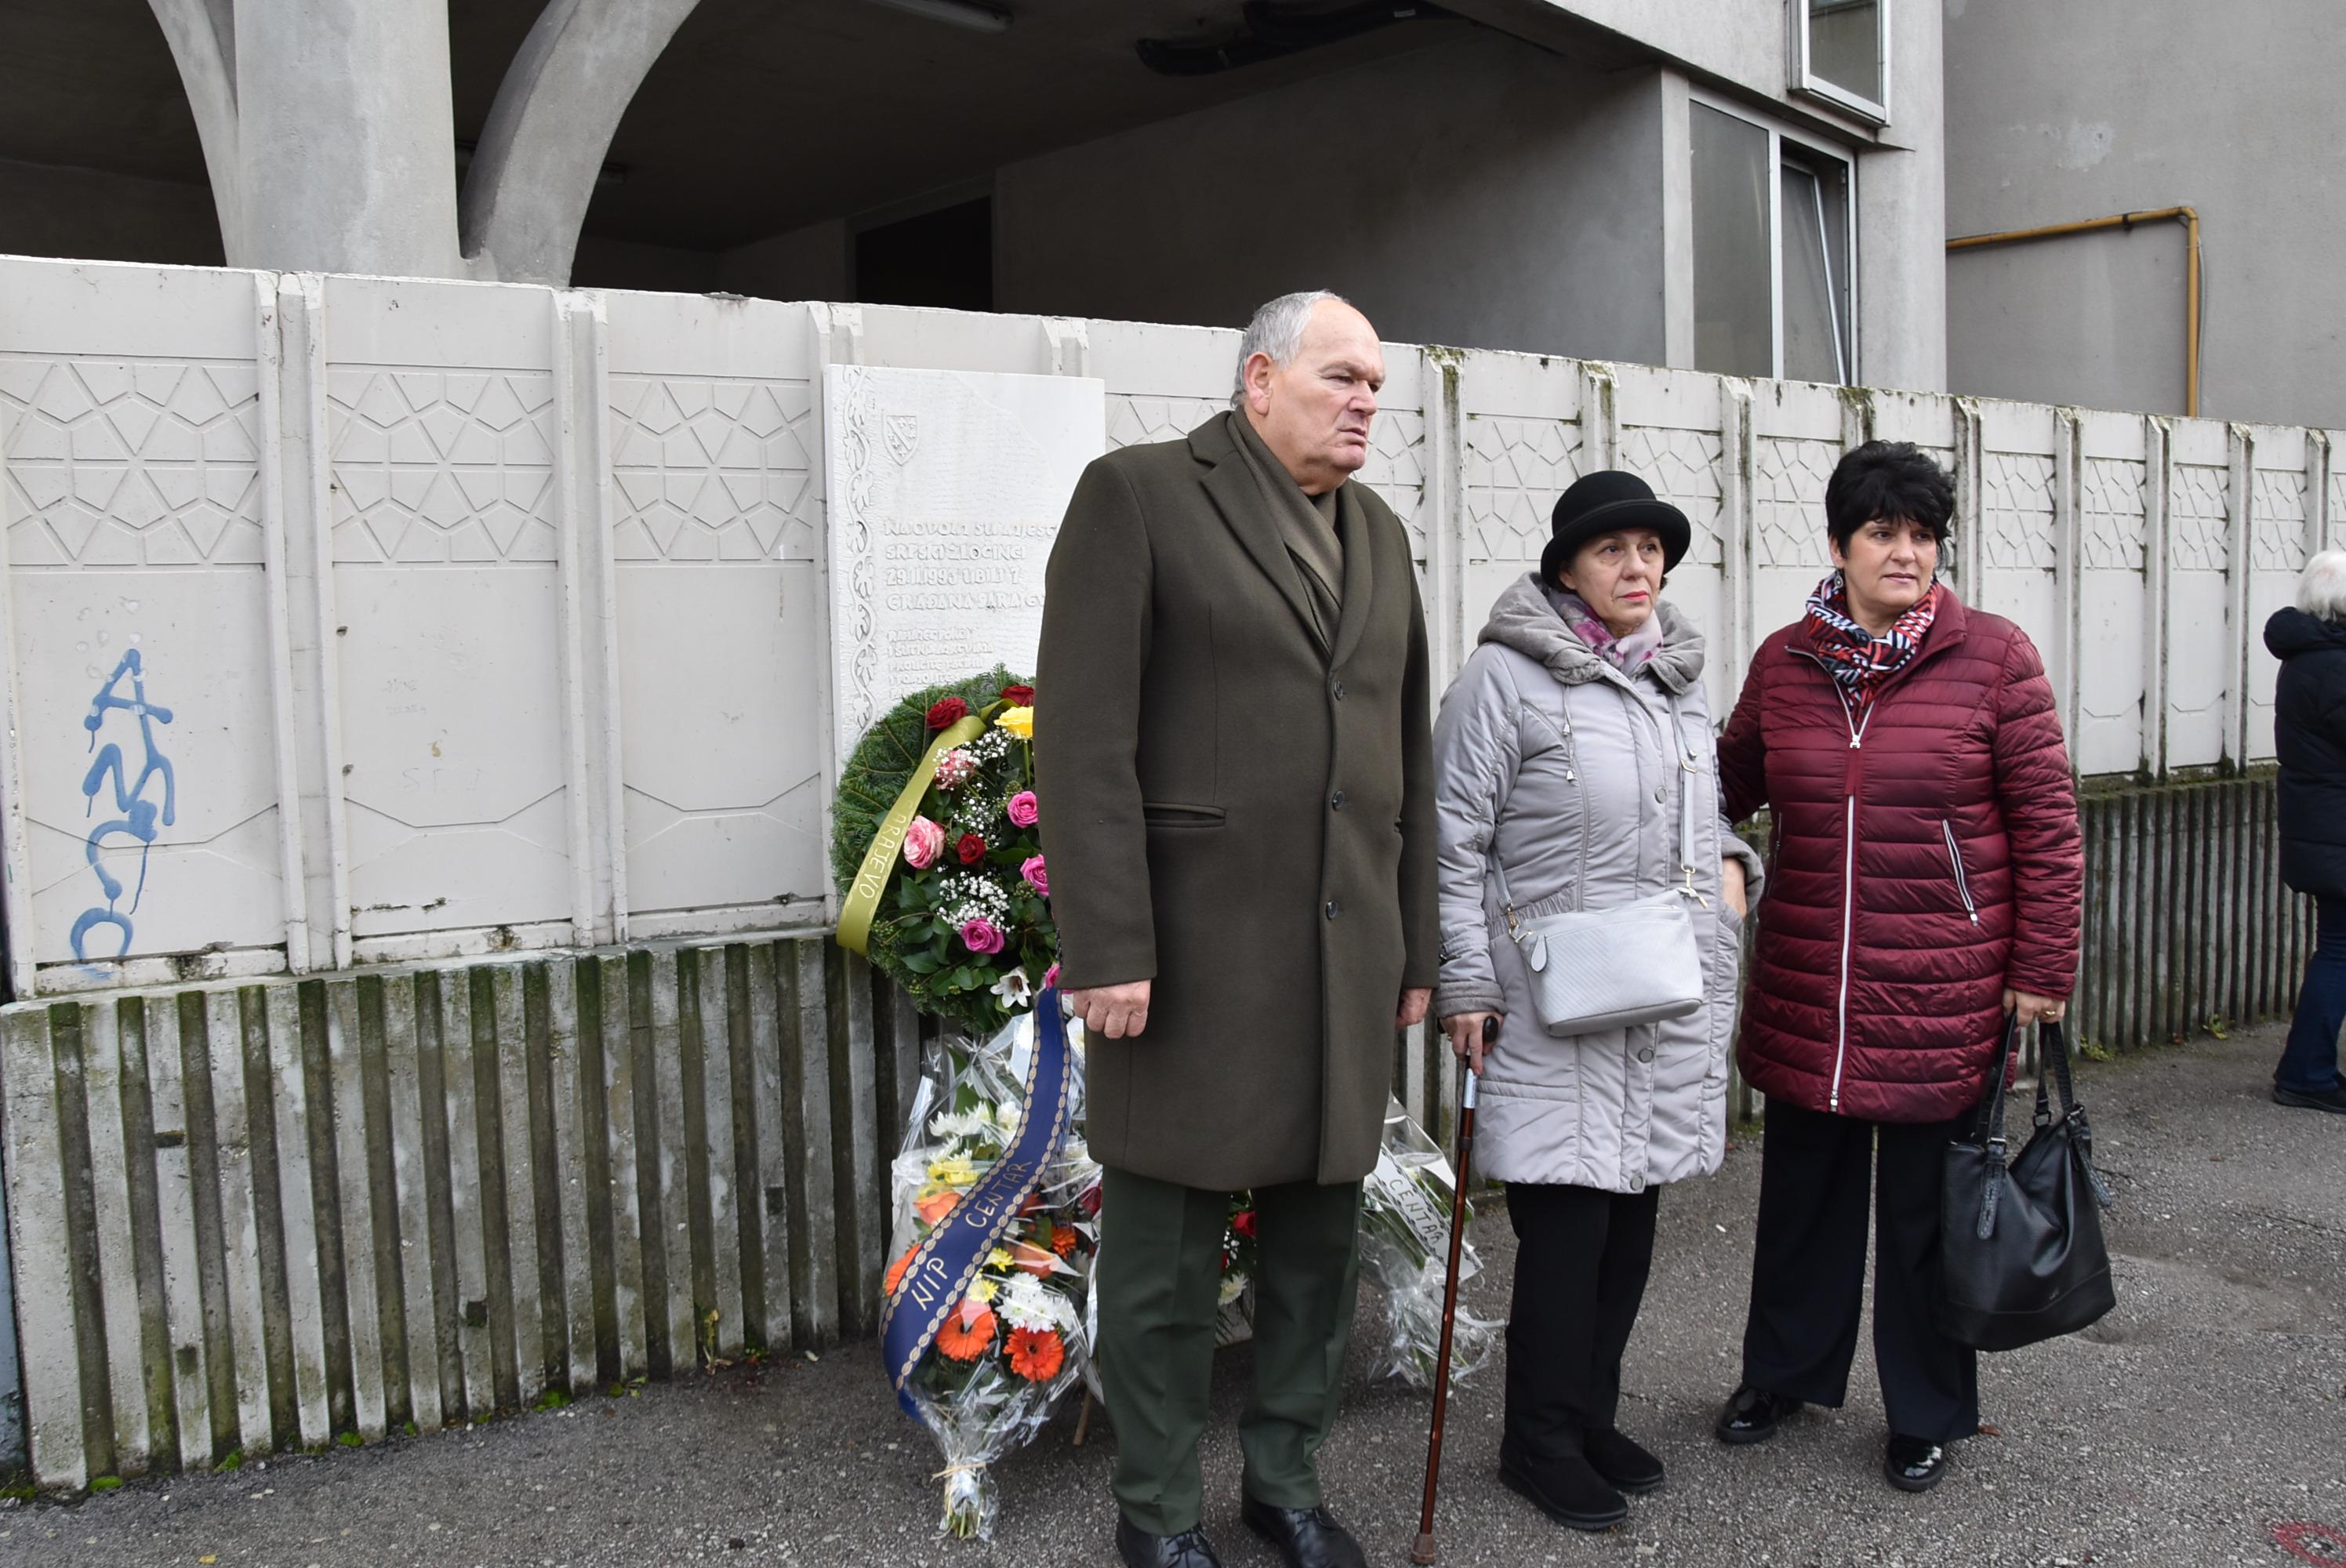 Položeno cvijeće i odata počast žrtvama masakra u ulici Hamdije Kreševljakovića kod broja 47 - Avaz